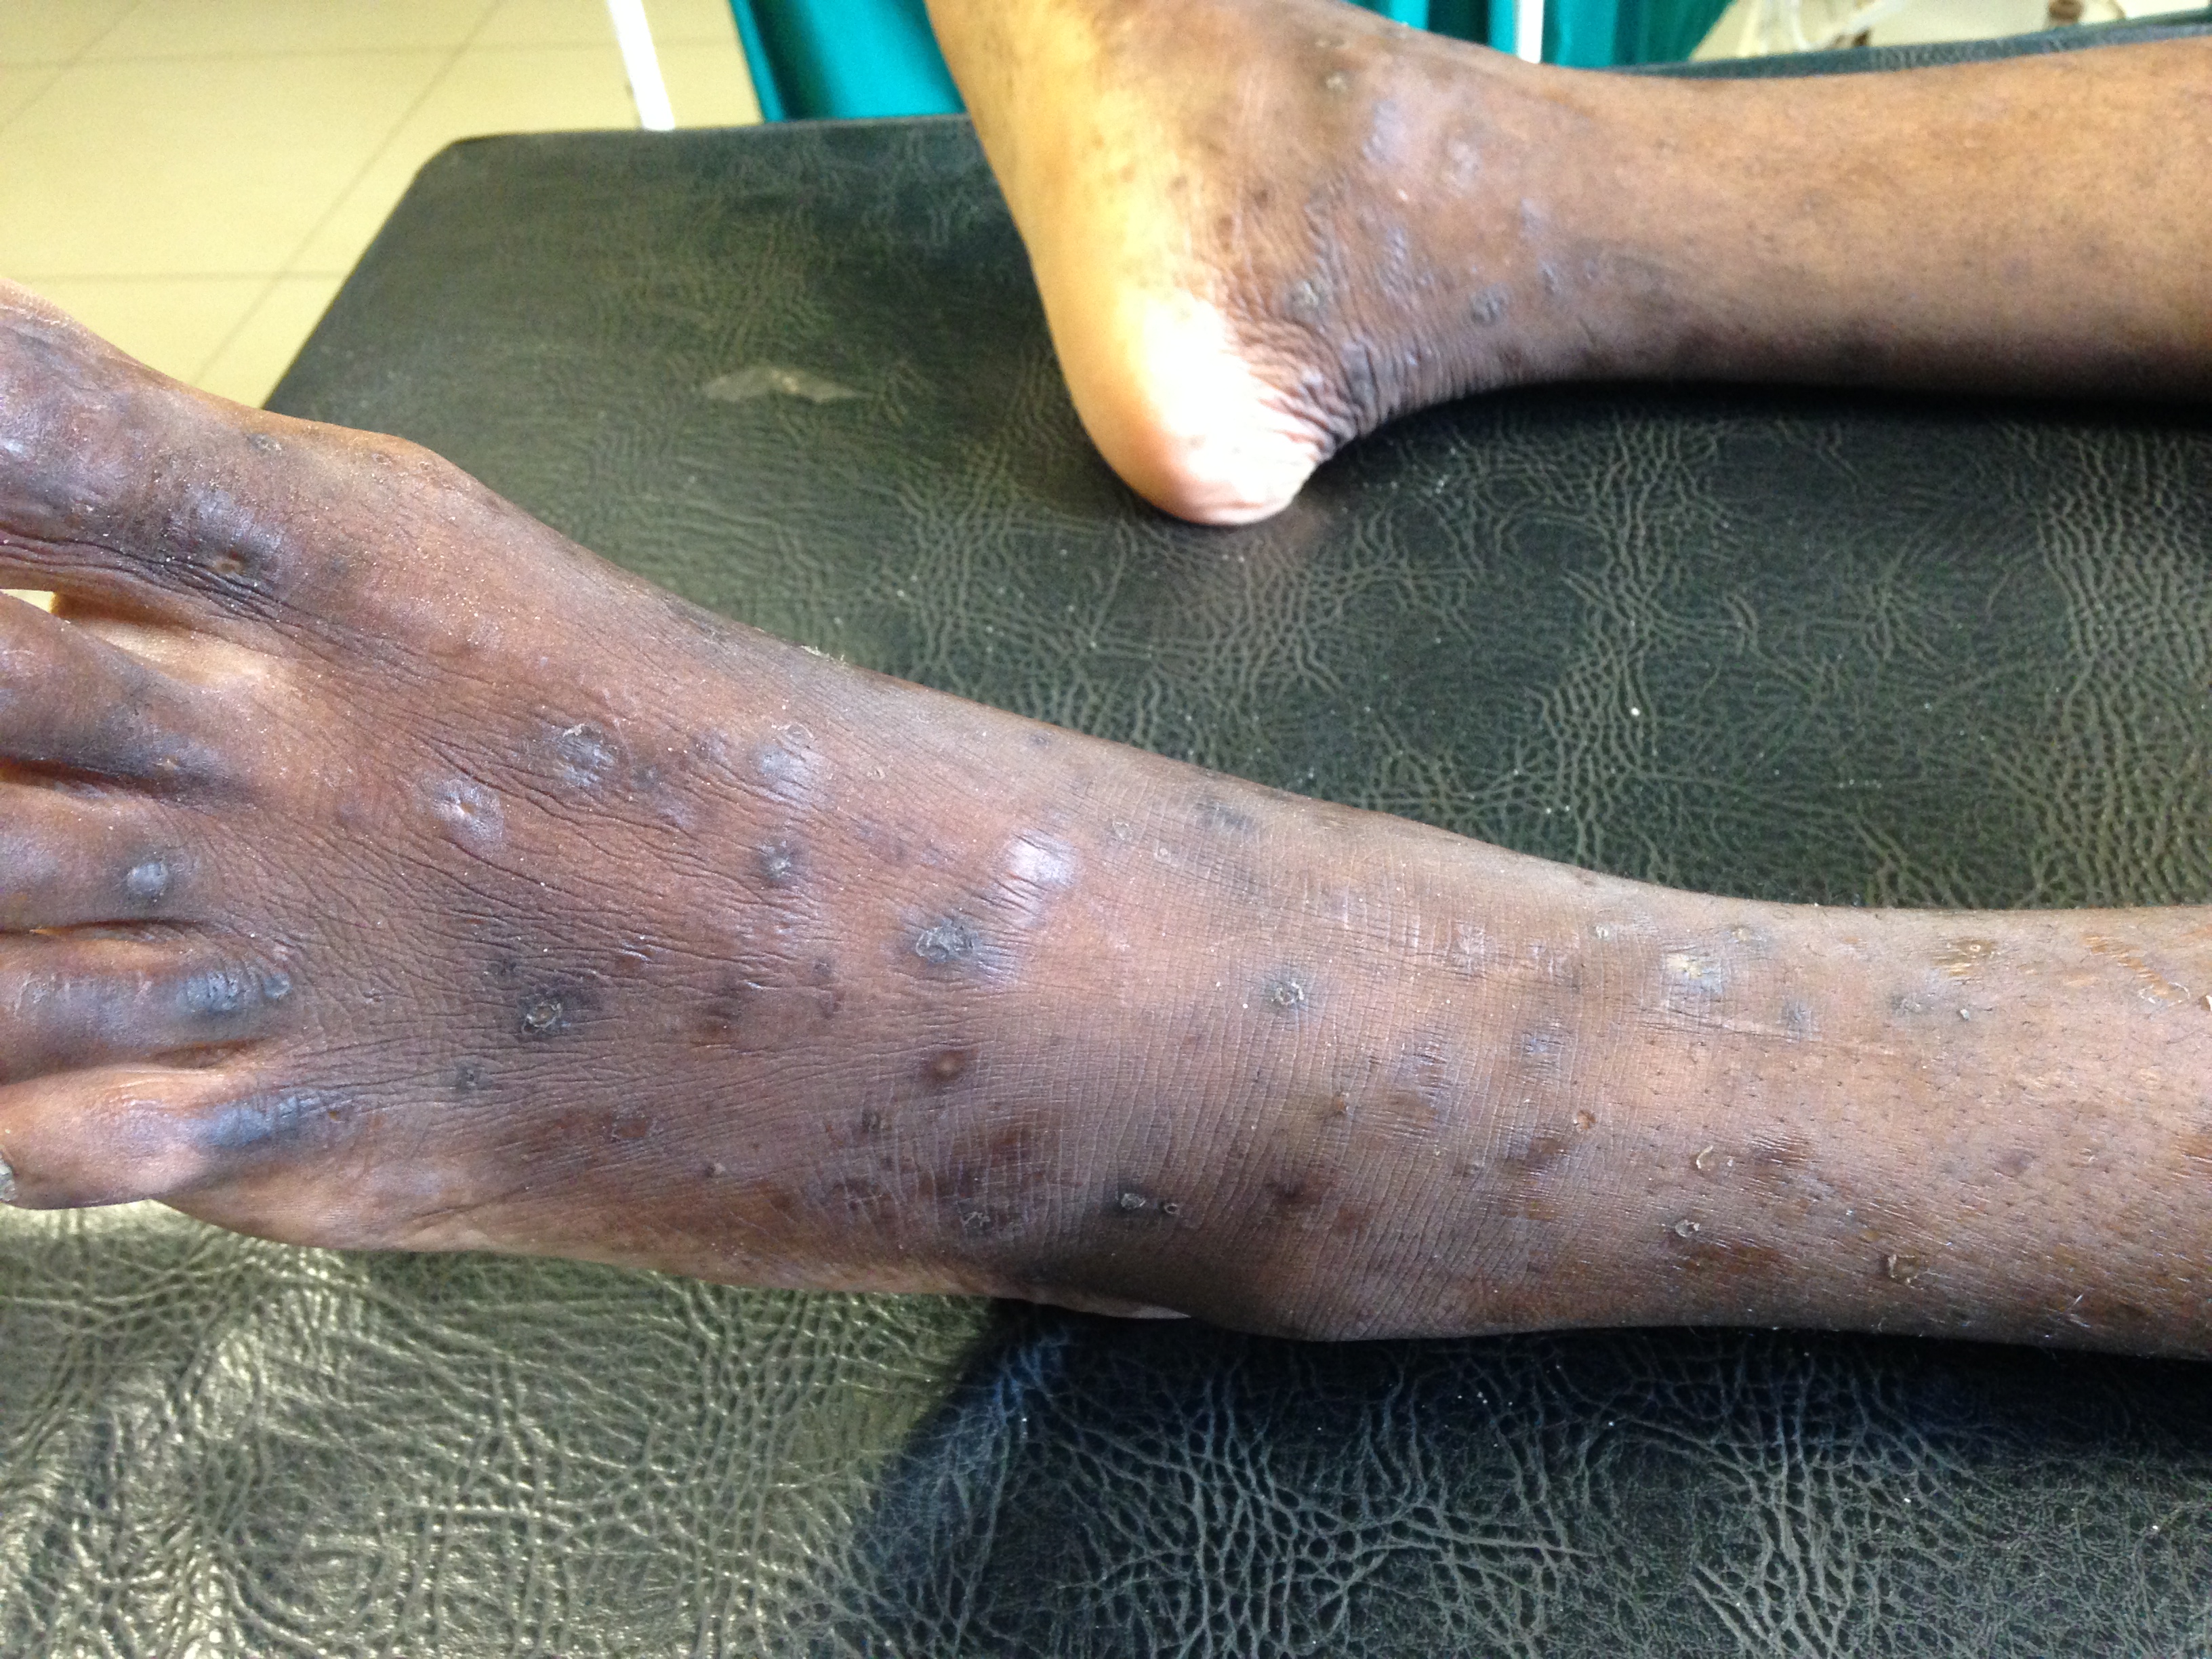 hiv rash feet